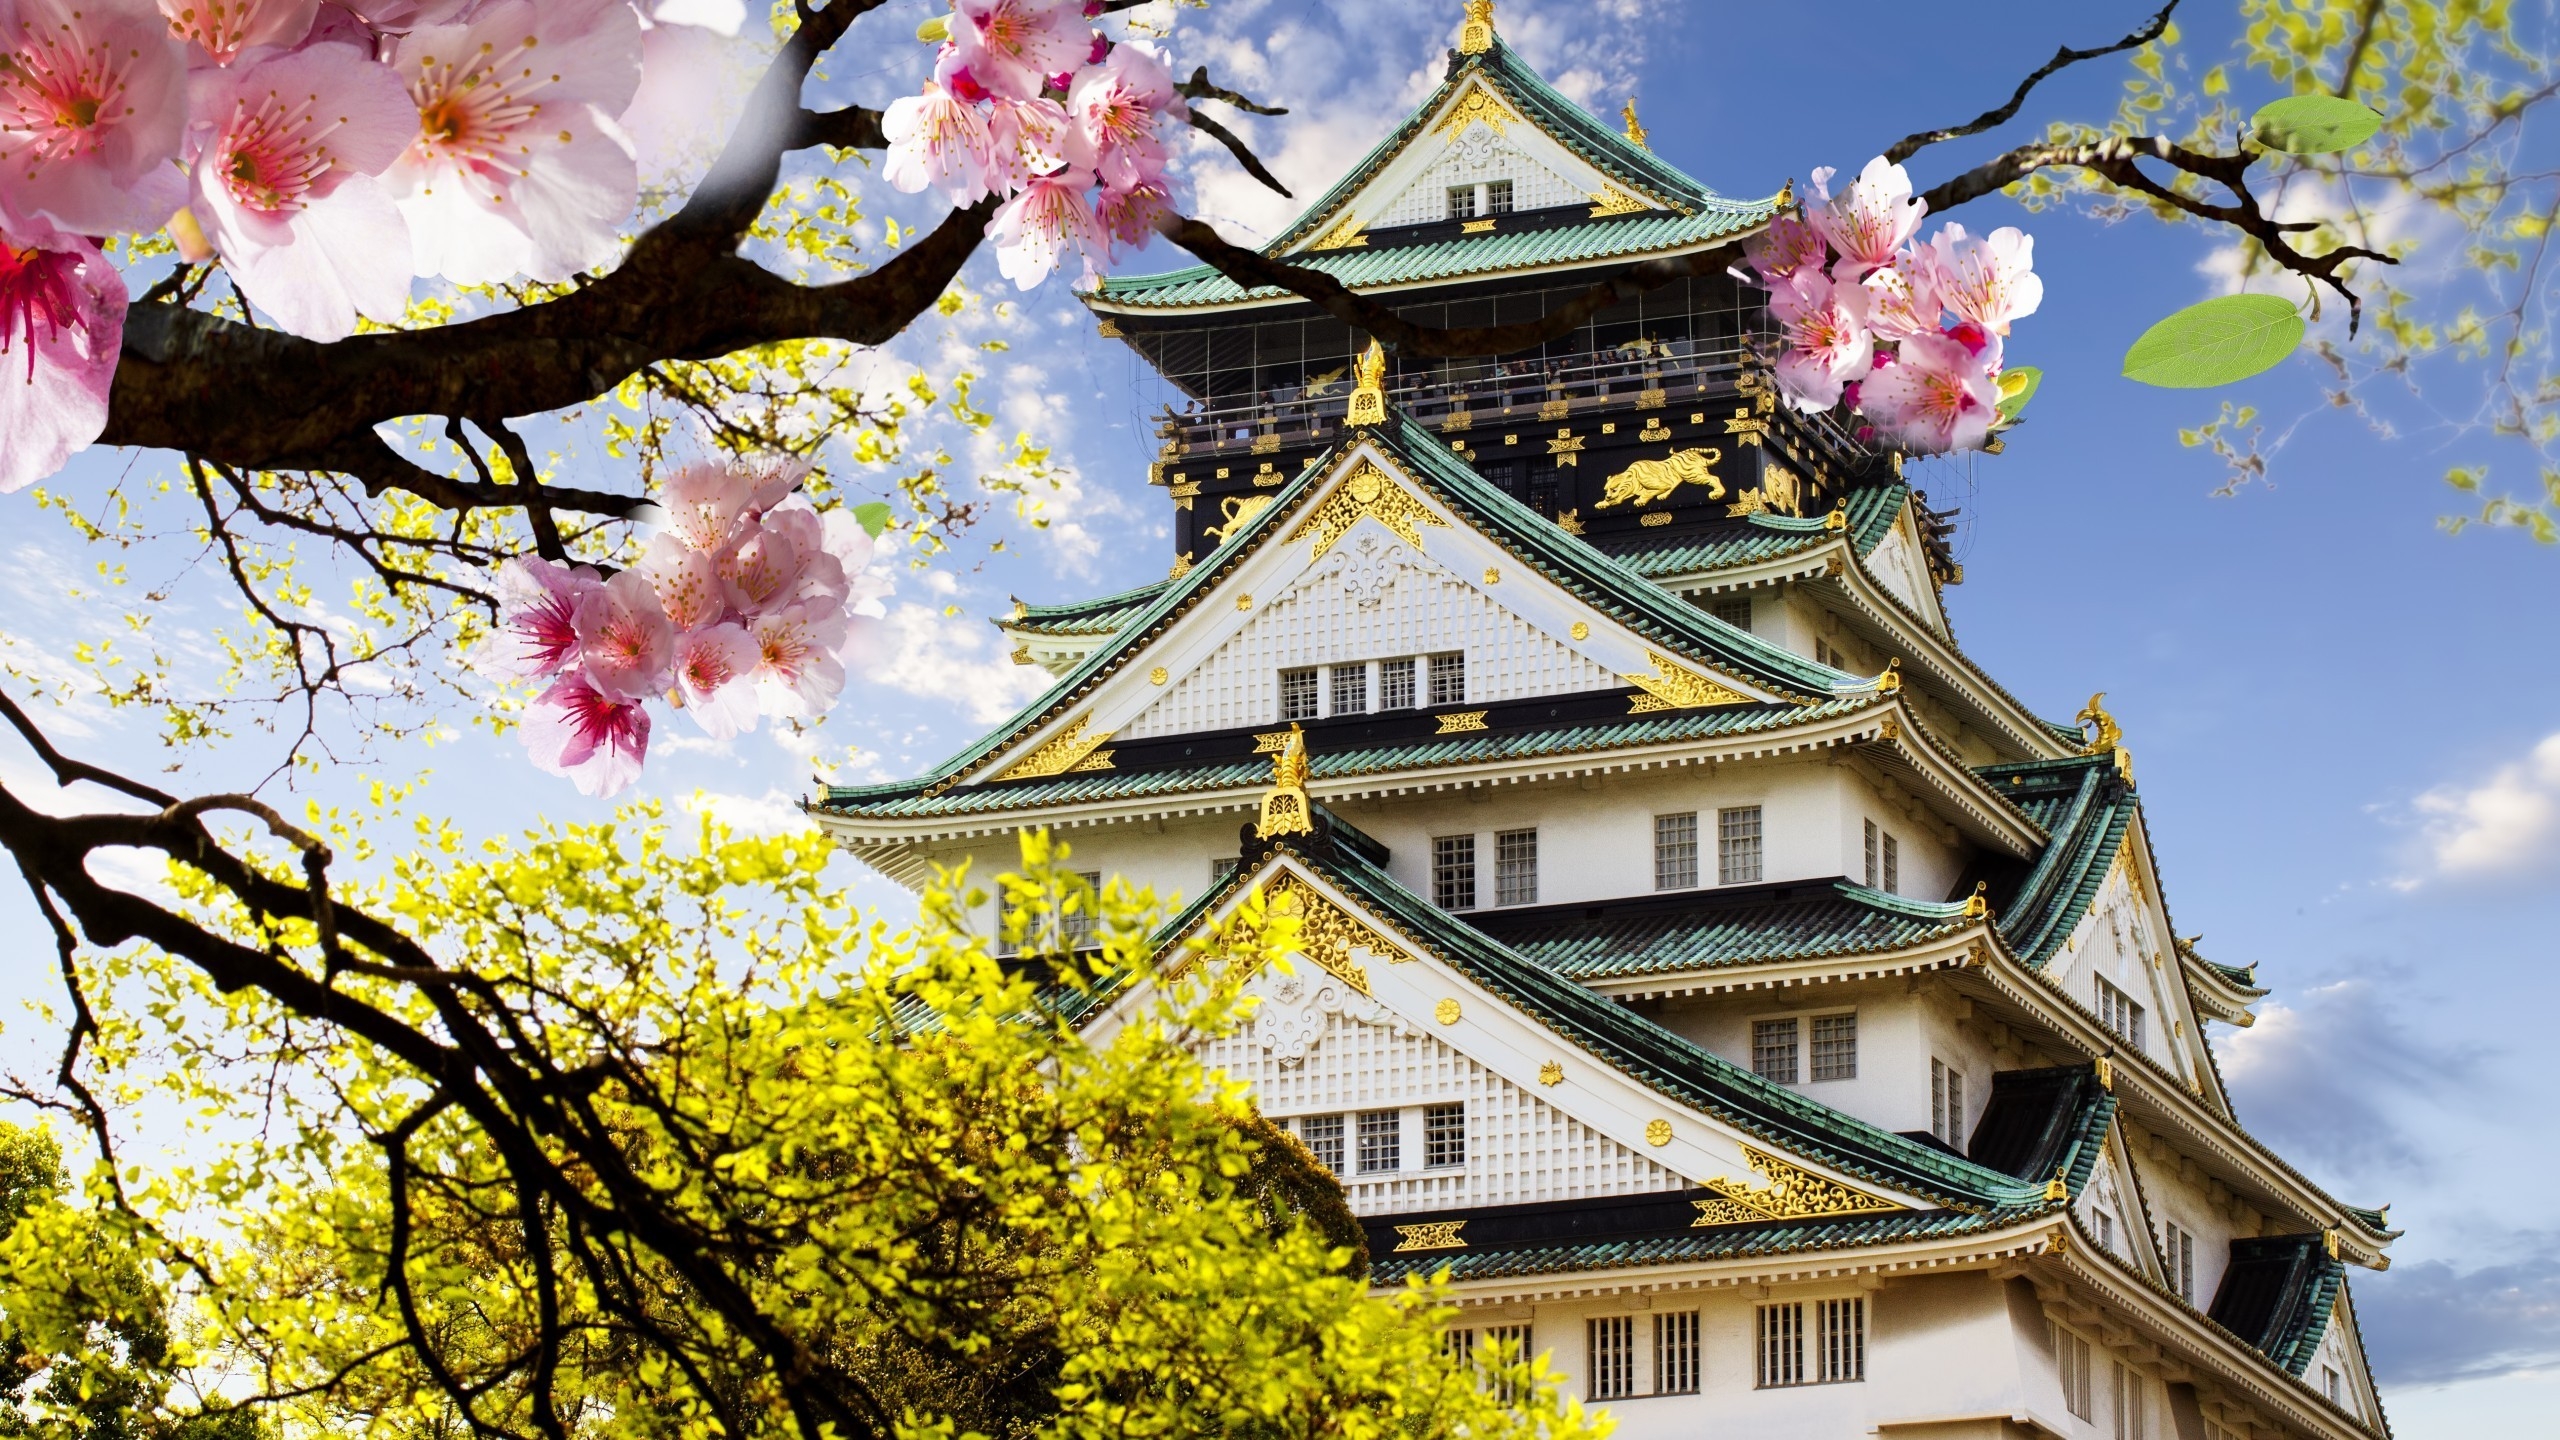 Japanese Castle for 2560x1440 HDTV resolution